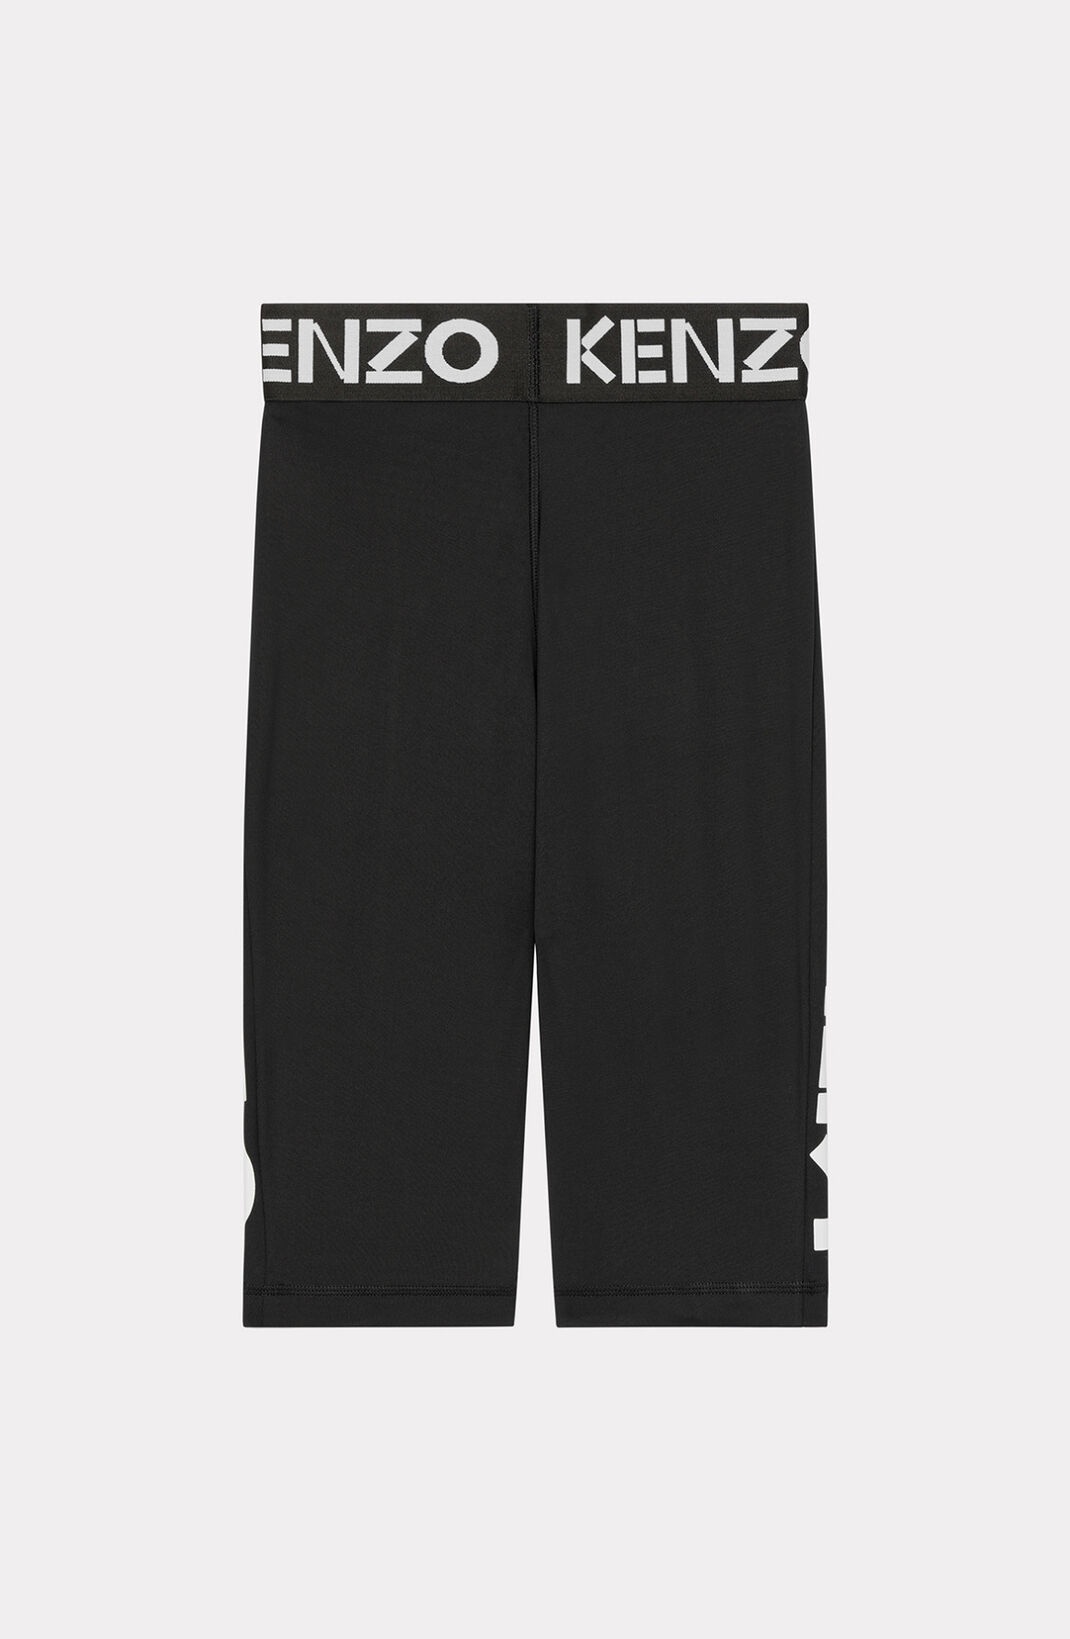 KENZO Logo cycling shorts - 2